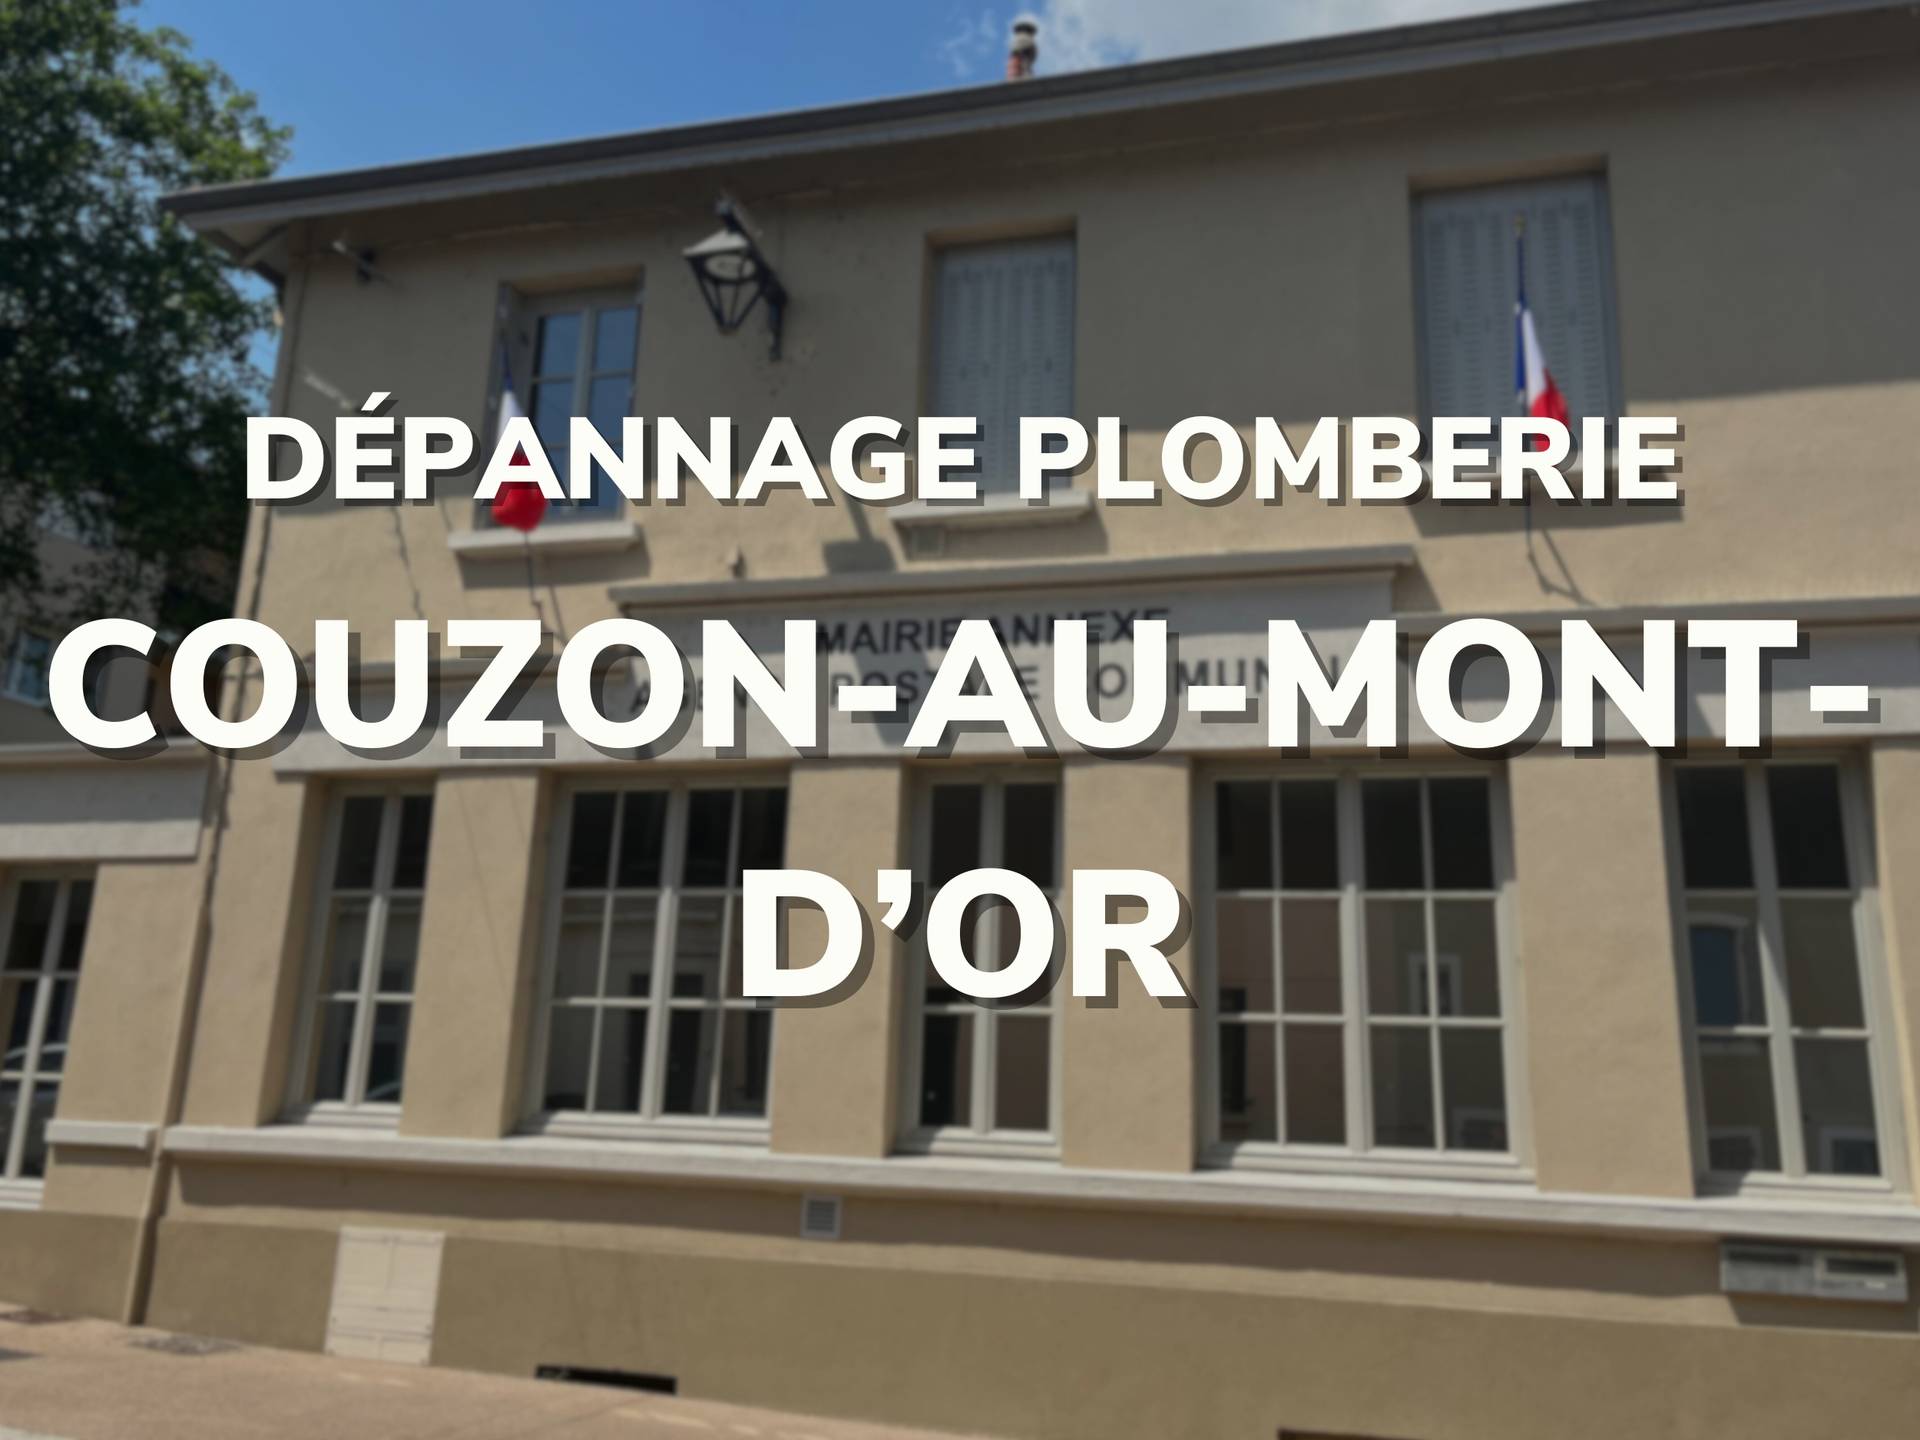 Couzon-au-Mont-d'Or (69270)